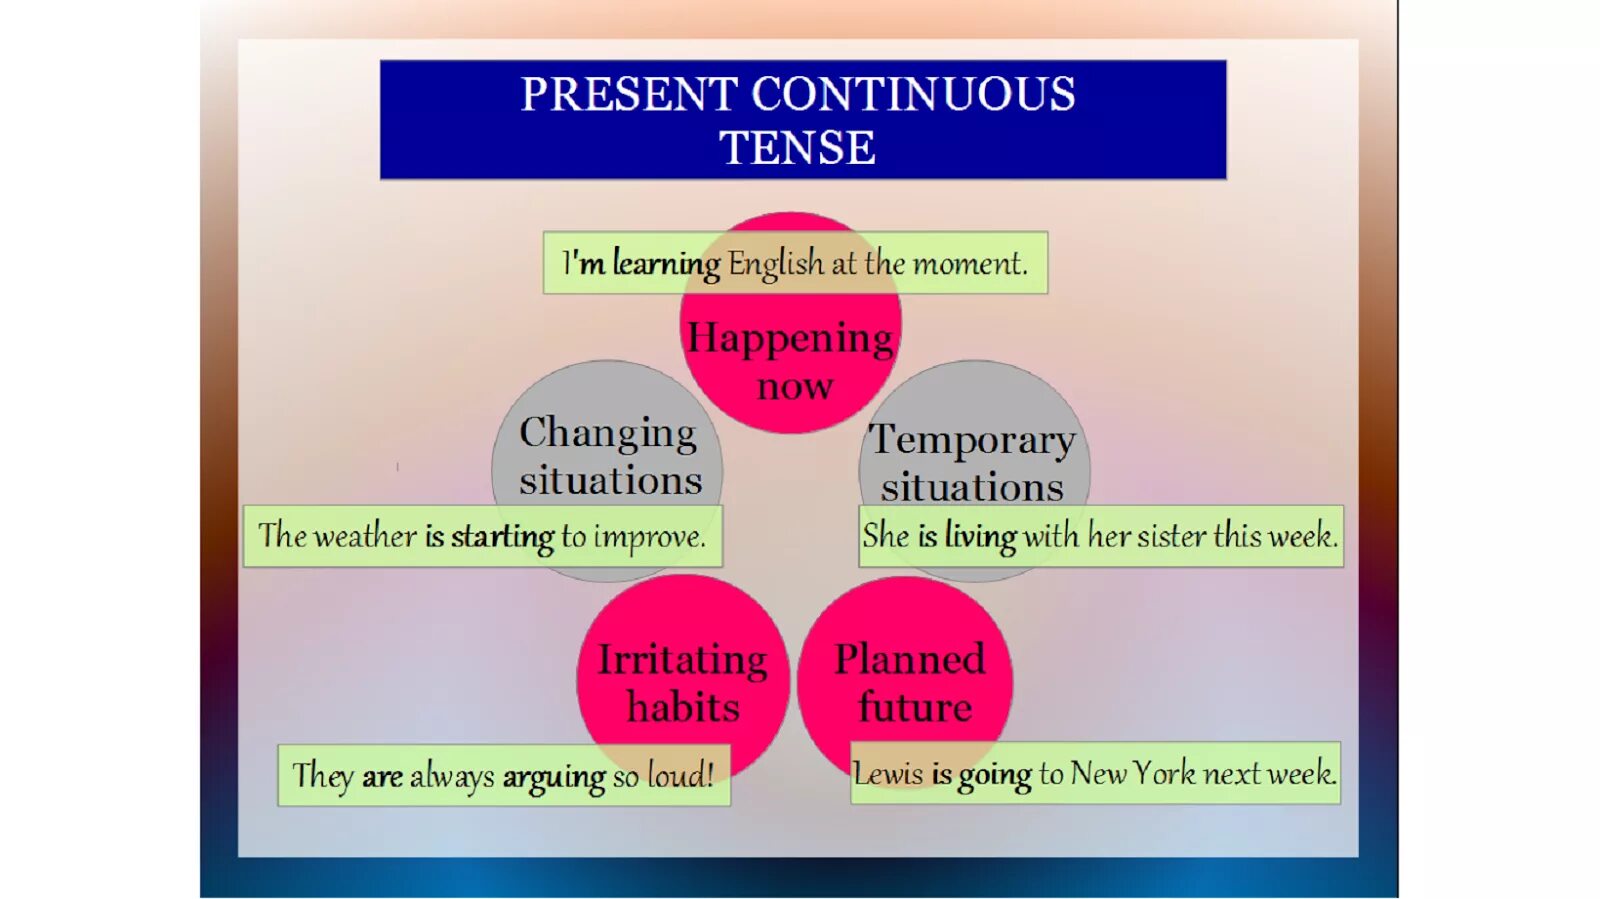 10 sentences present continuous. Презент континиус. Past Continuous situations. Present Continuous инфографика. Present Continuous situations.